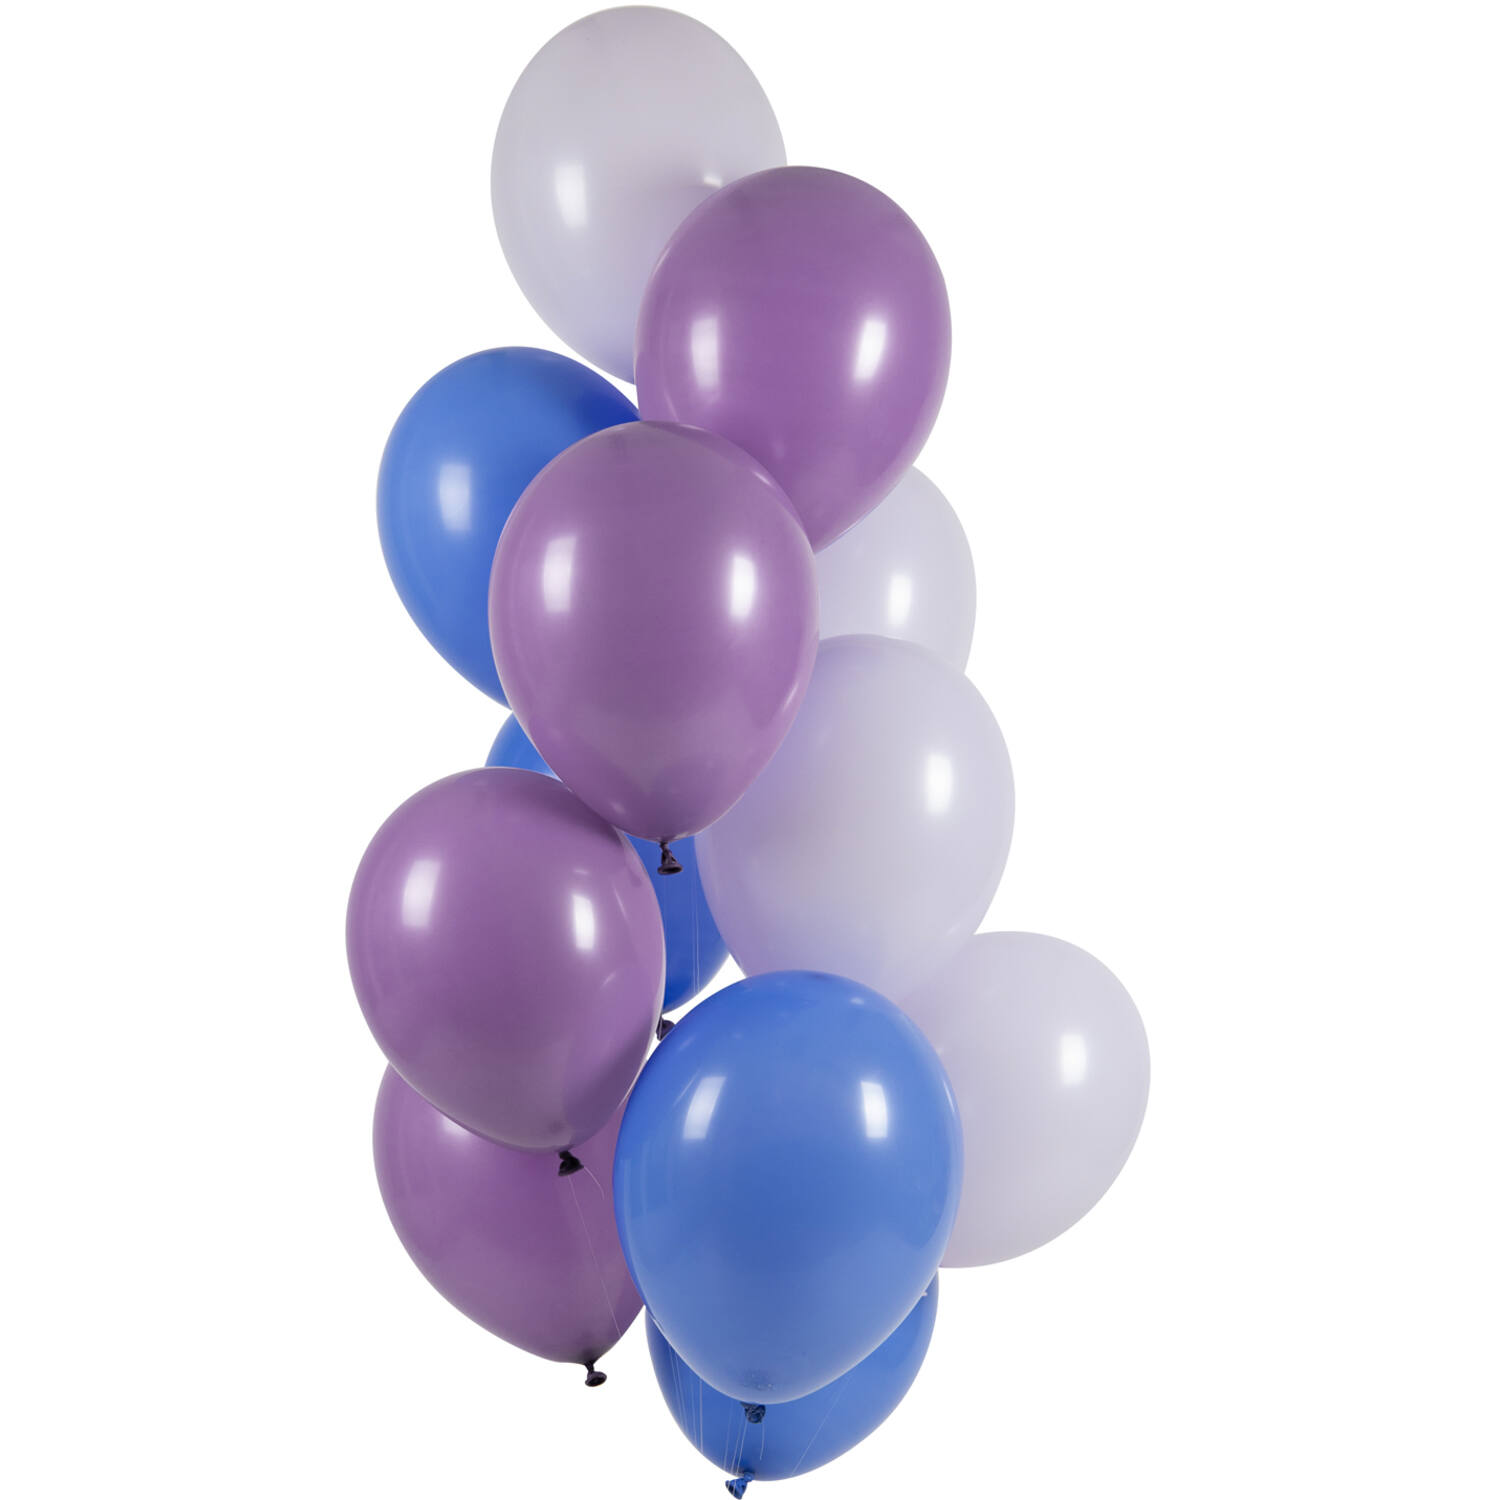 NEU Premium-Latex-Luftballons Blau-Lila-Grau, 33cm, 12 Stk.